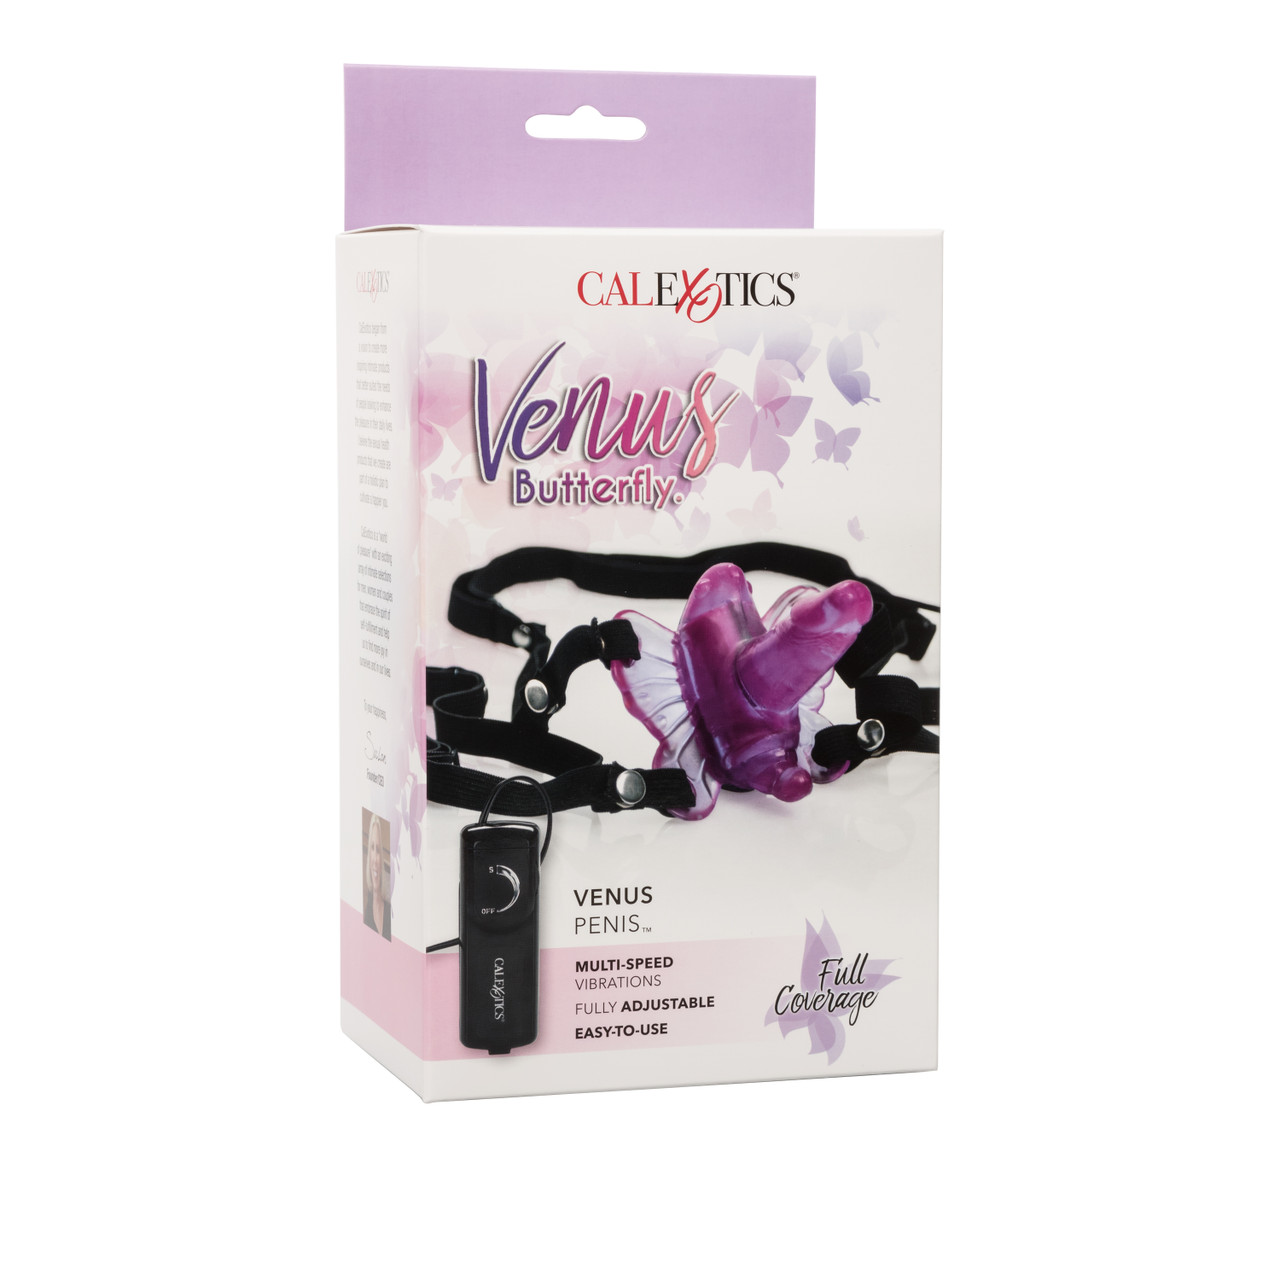 Вибротрусики с вагинальным отростком CalExotics Venus Butterfly Venus Penis на проводном управлении, розовый